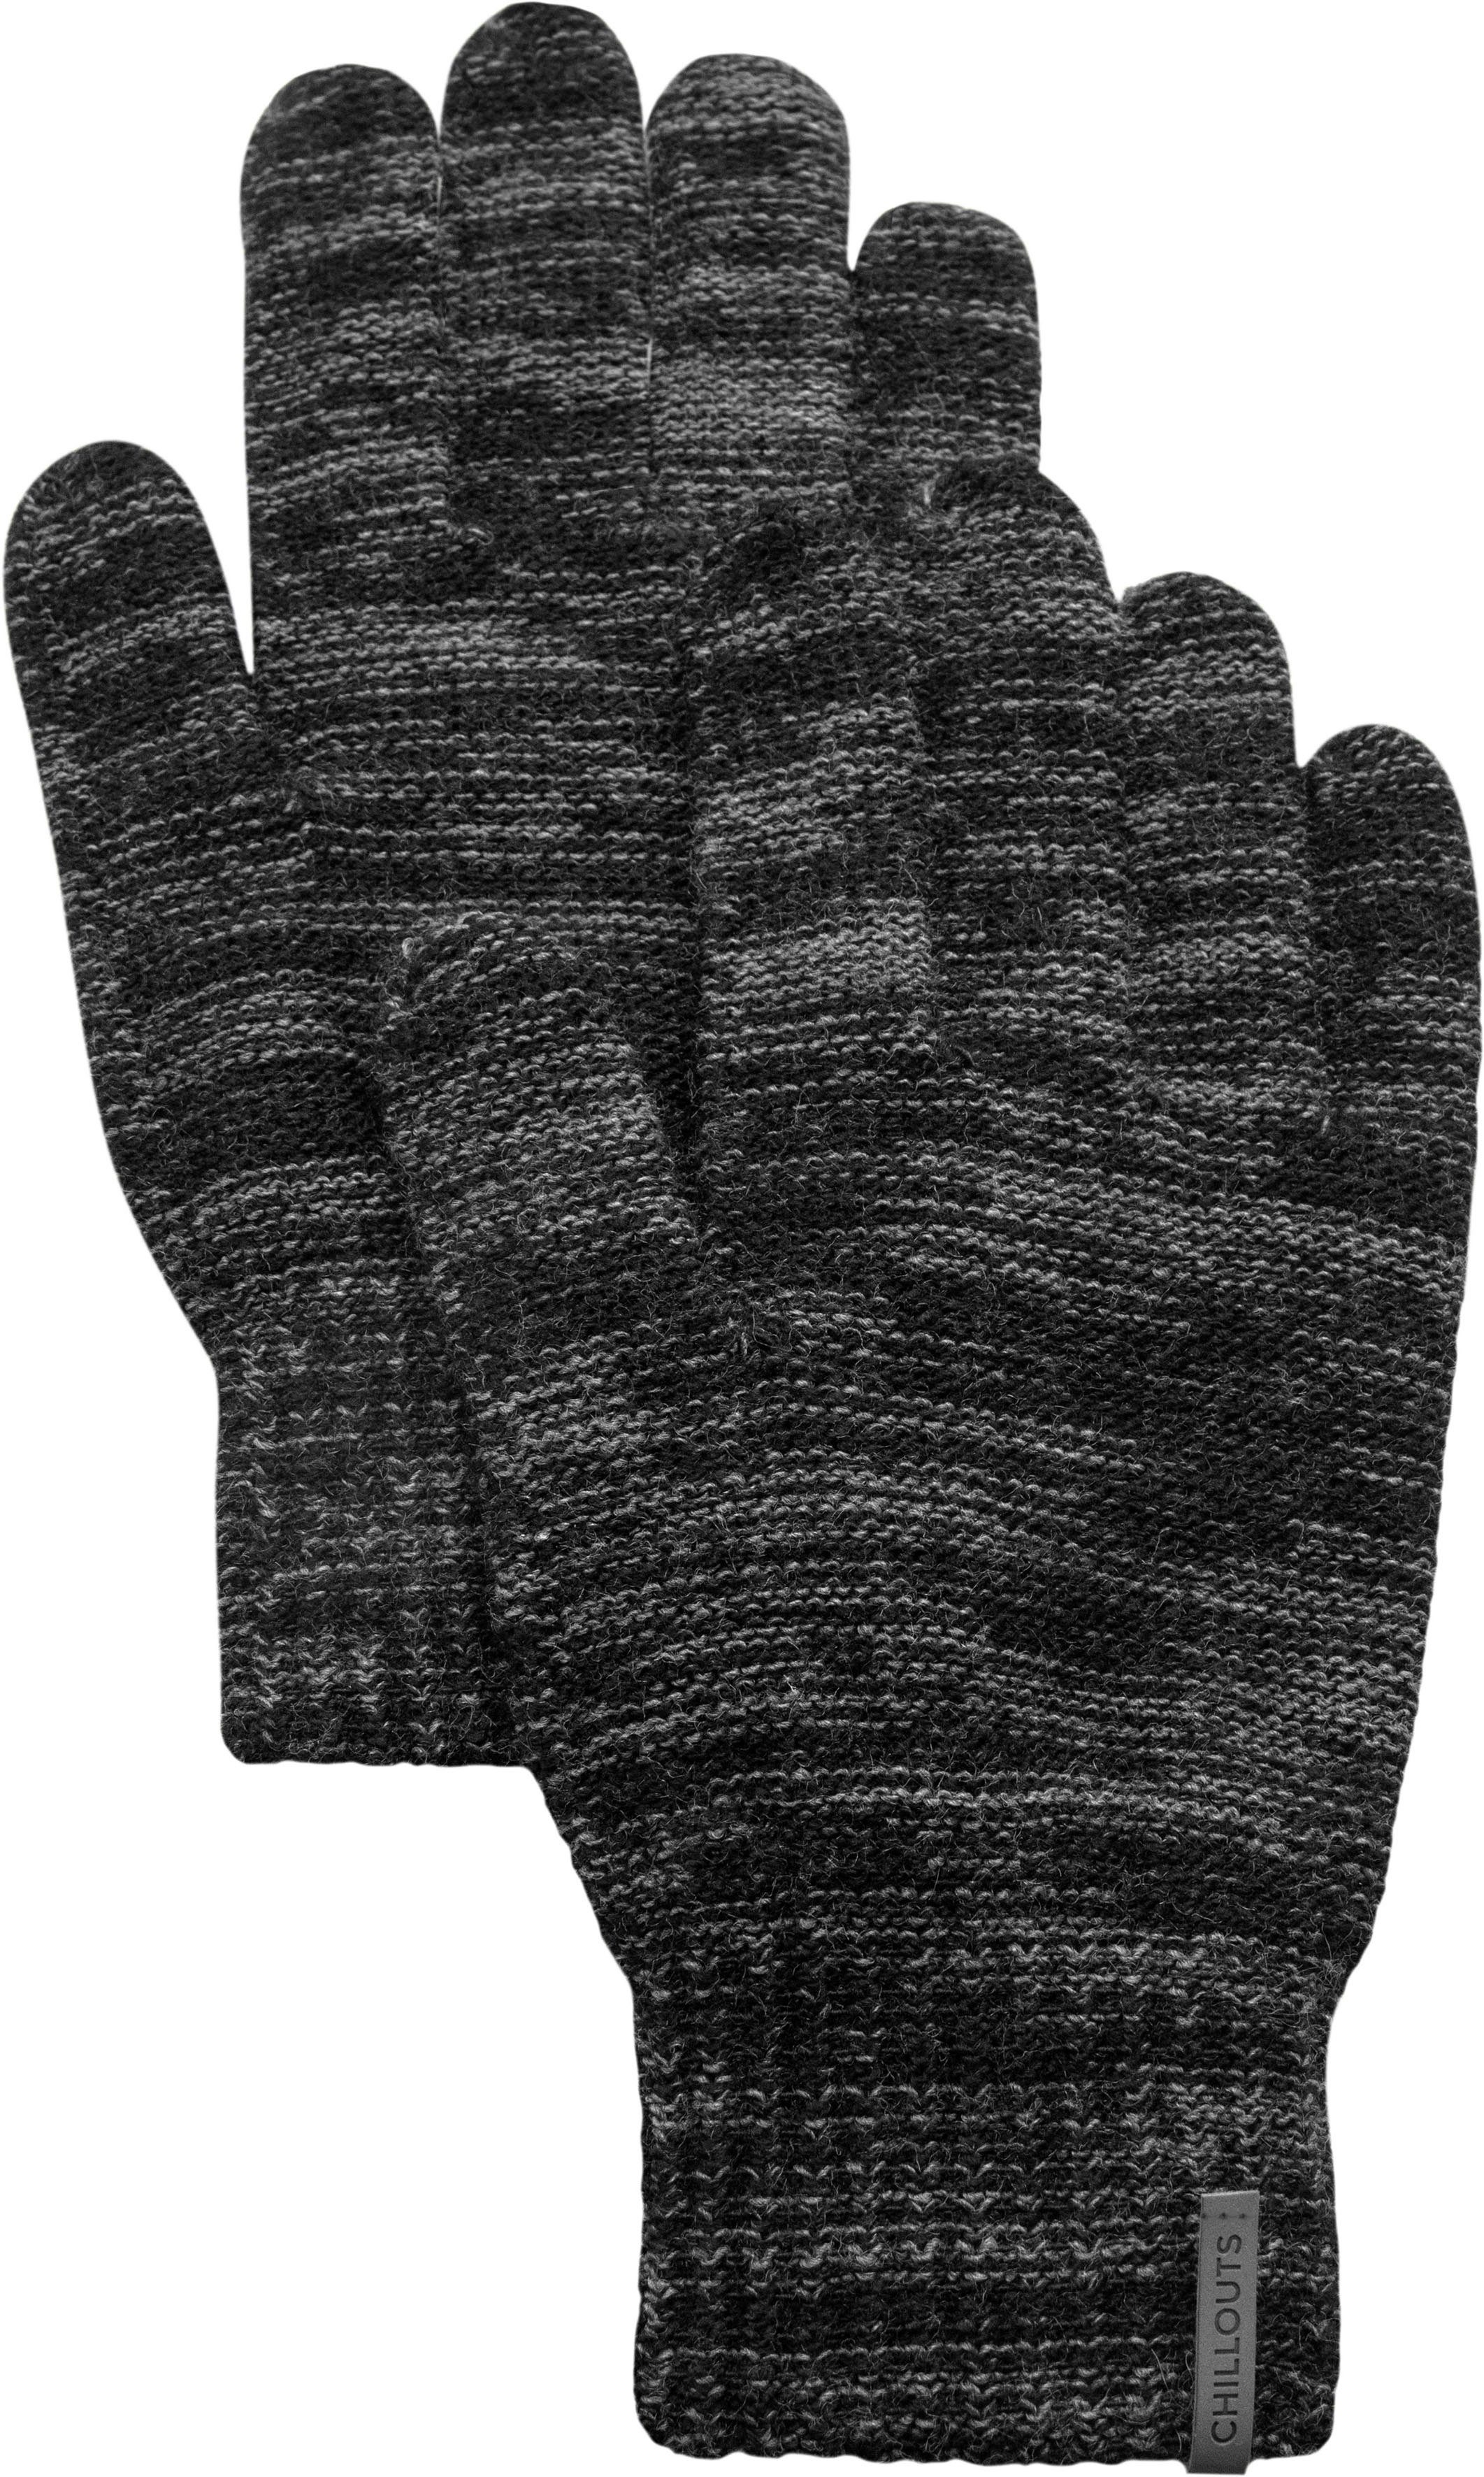 Strickhandschuhe chillouts Glove Ben